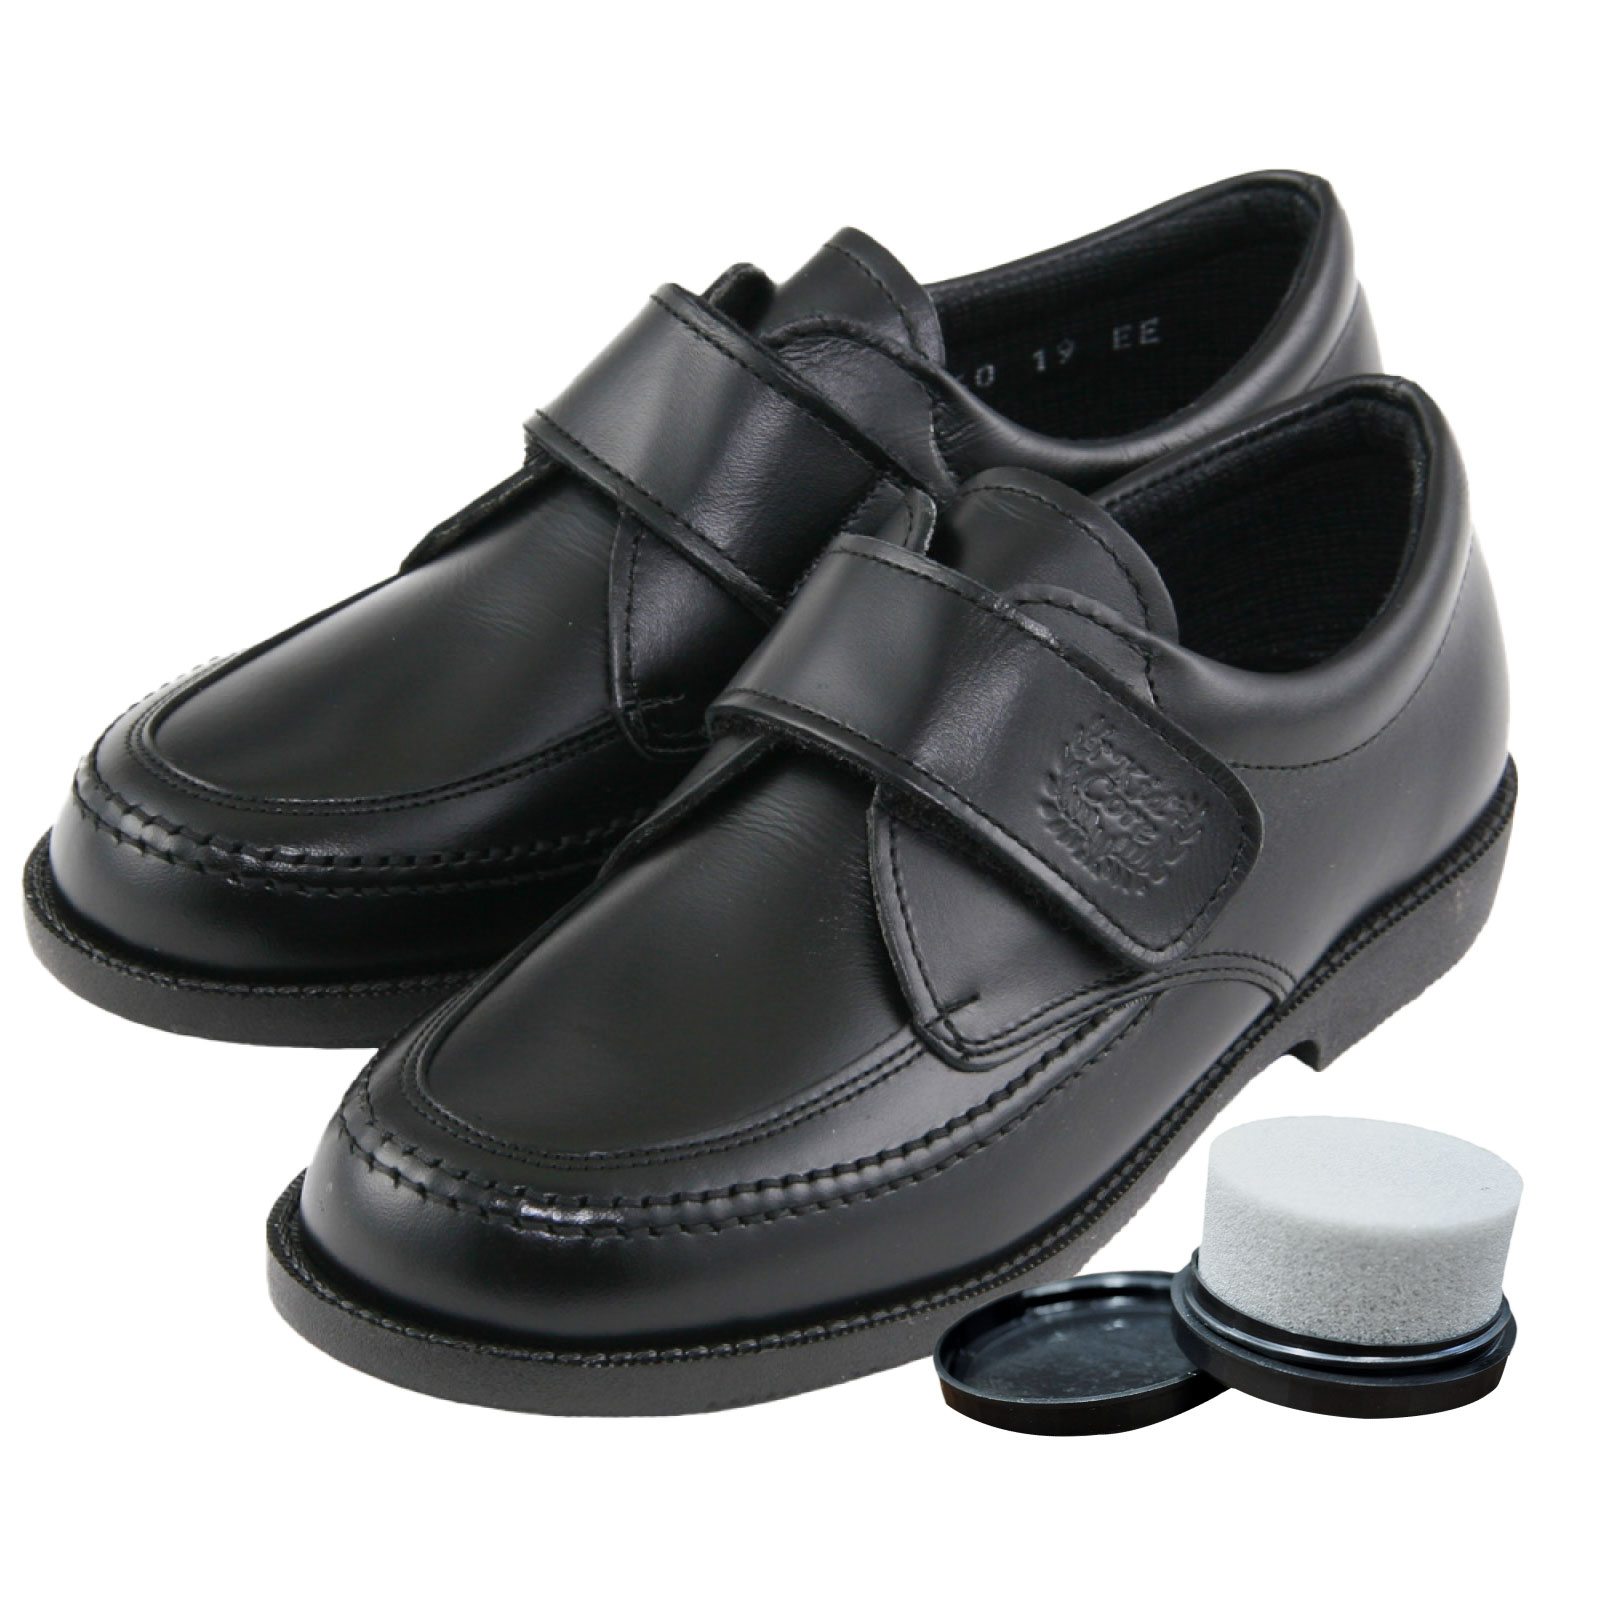 靴磨き付き KID CORE キッドコア 2E 日本製本革 ソフトタイプ マジックベルトローファー 2E ブラック ピンクッションソール 15.0cm～21.0cm  快適素材MARIQUE(マリーク)使用 靴ズレしにくい靴 1～3営業日以内に発送となります。※20cm以下のサイズ ...